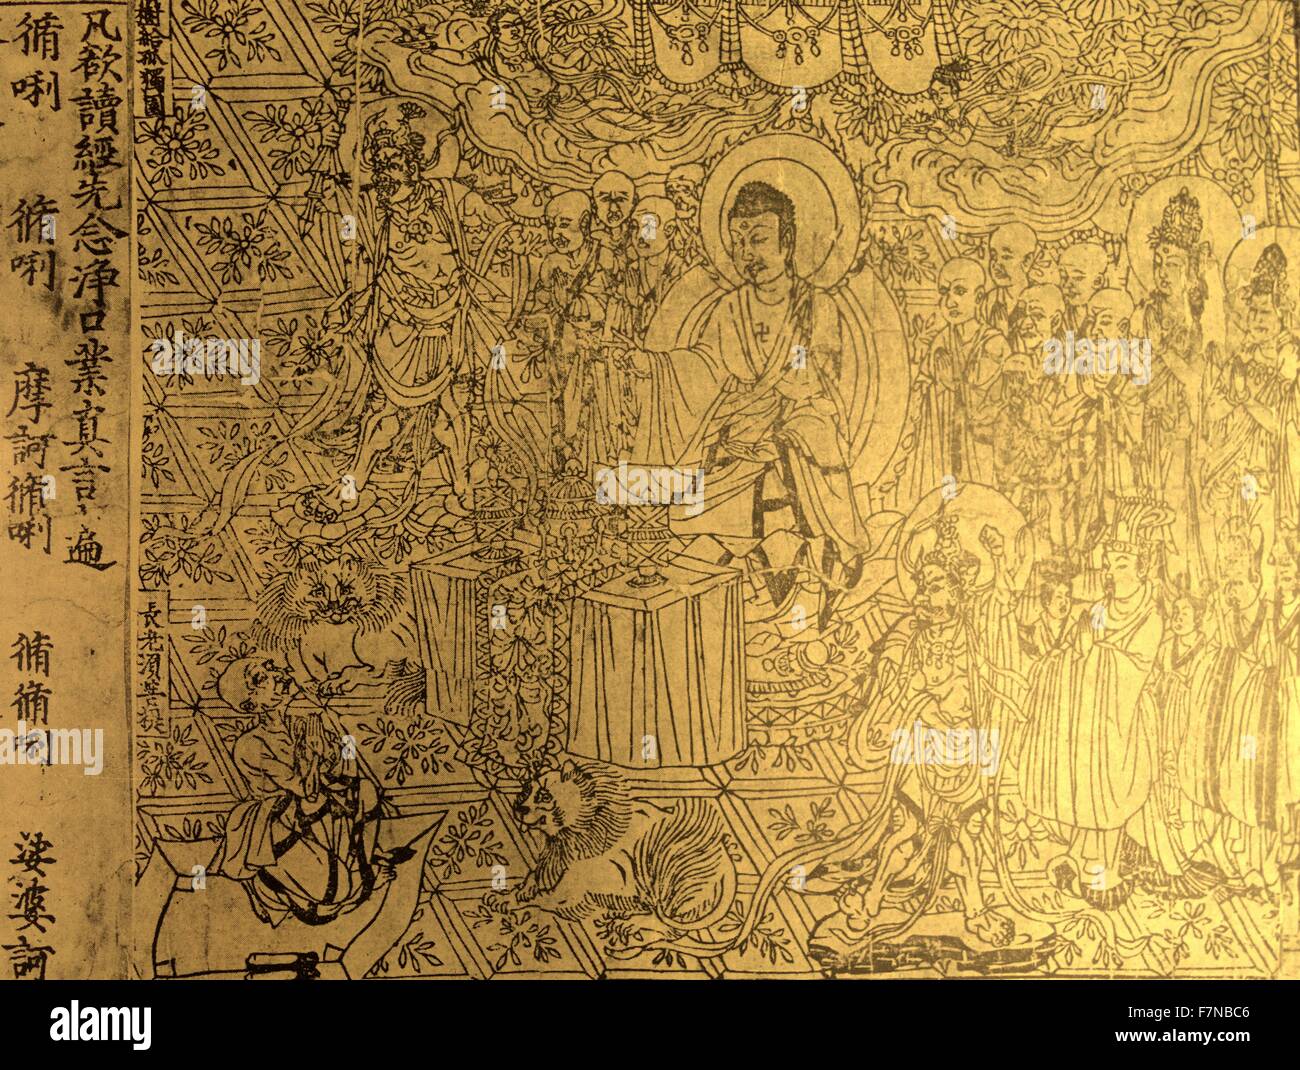 El Diamante Sūtra. Un budista Mahāyāna sūtra, encontrado entre los manuscritos de Dunhuang, en China, a principios del siglo XX por Aurel Stein. El Sutra data del año 868 D.C. Foto de stock